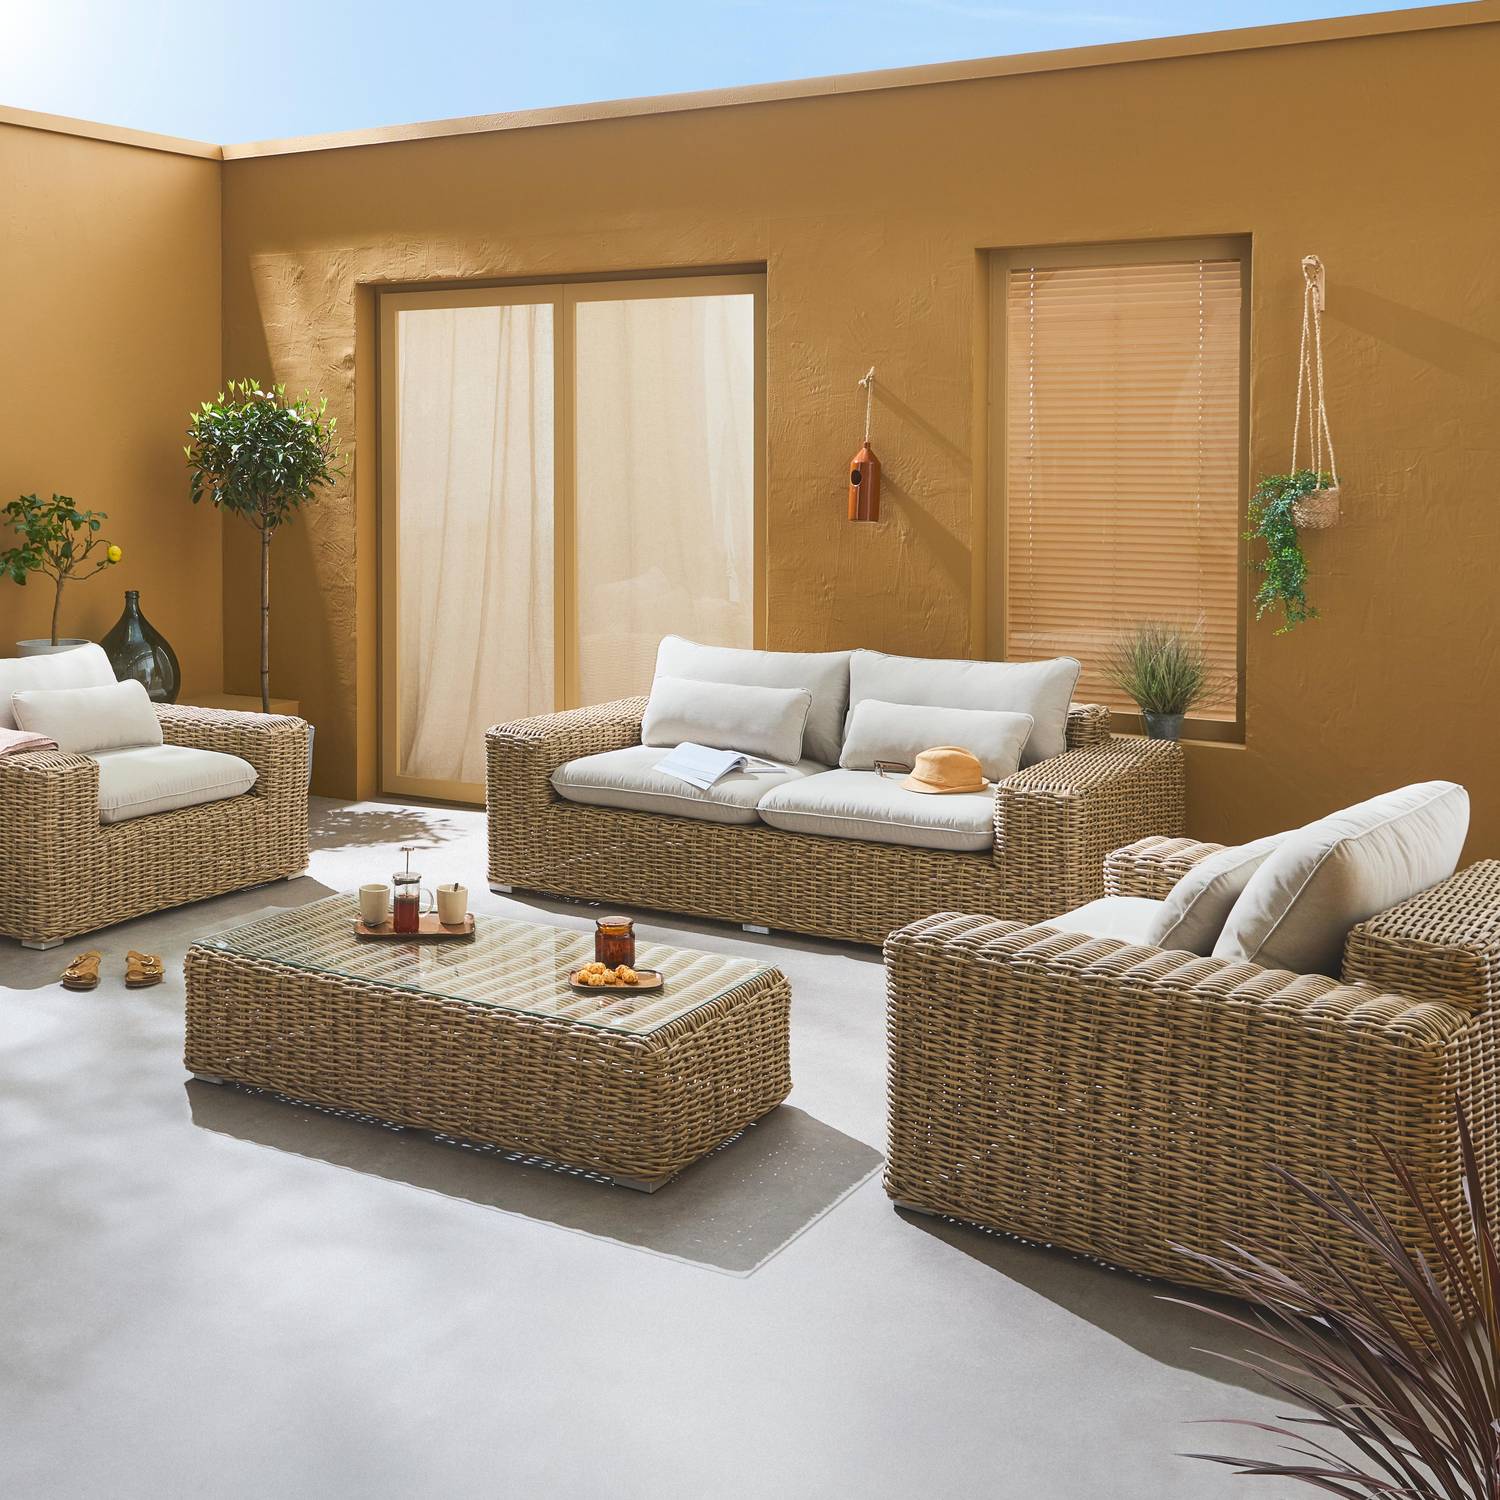 Salon de jardin extra large pour 4 personnes en résine beige - Gubbio - coussin beige Photo2